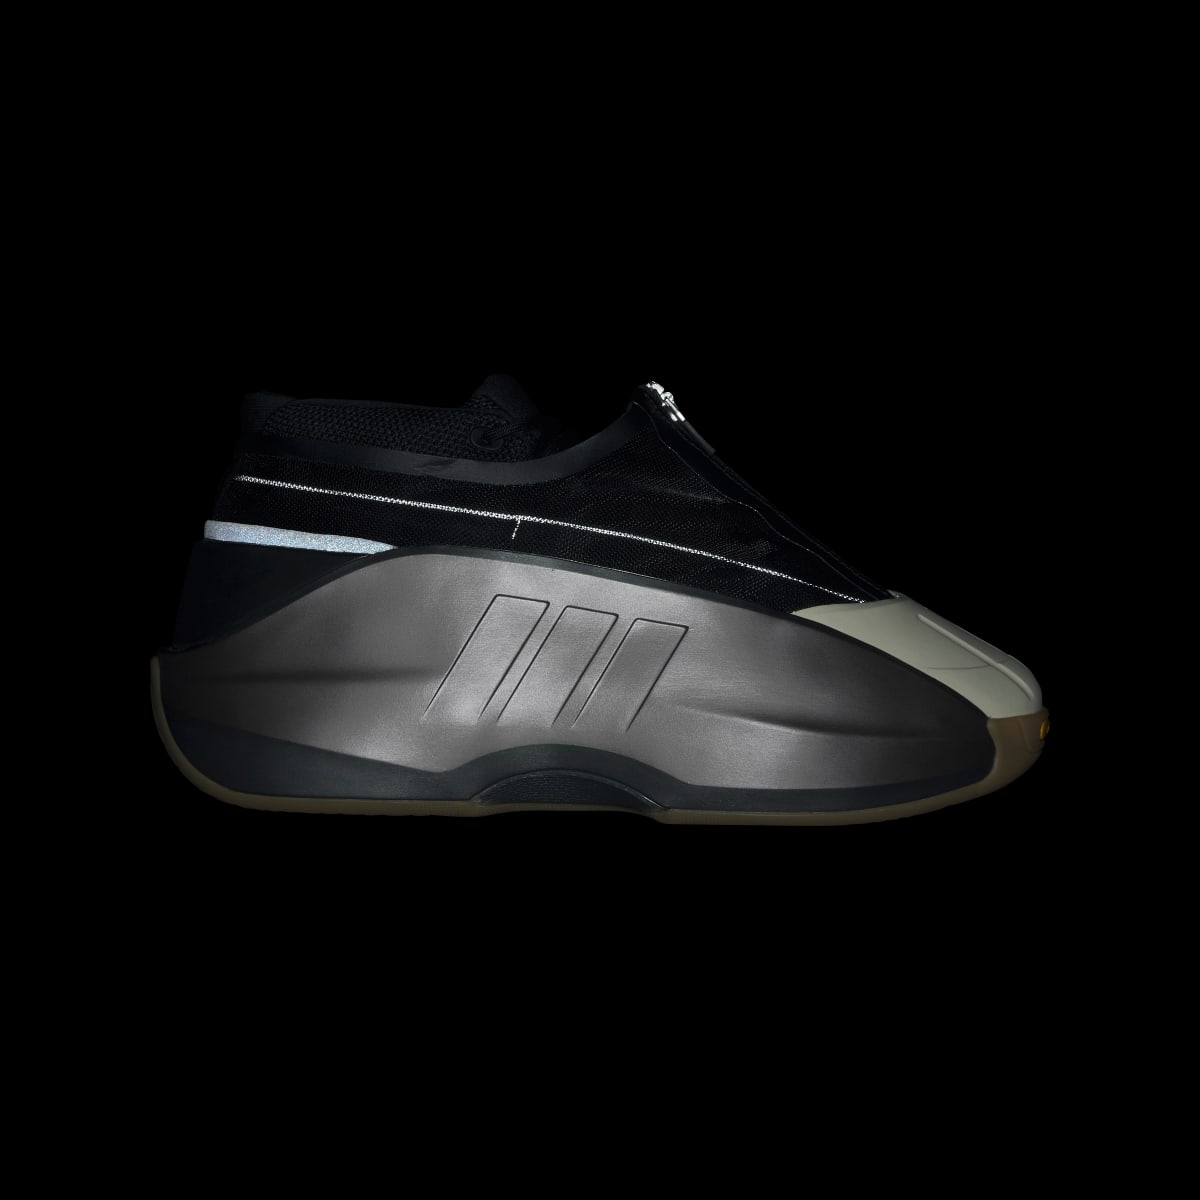 Adidas Crazy IIInfinity Shoes. 5